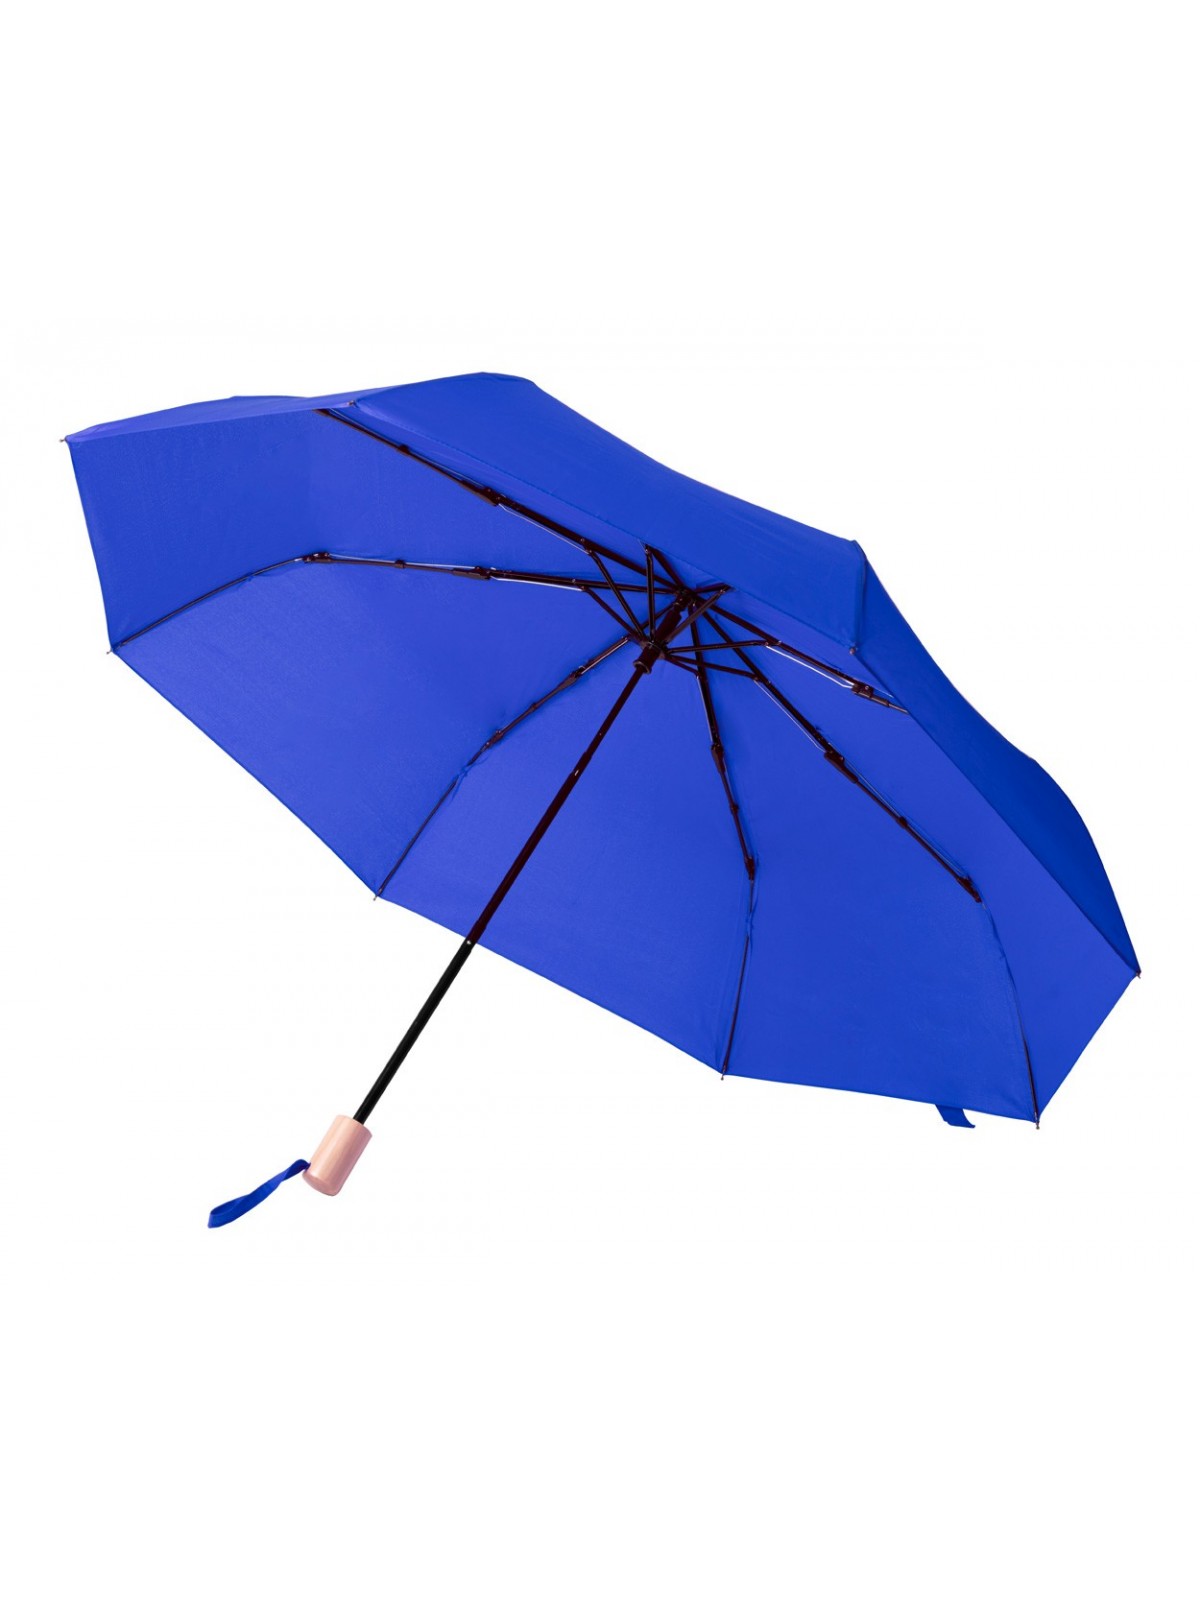 10-838 Parapluie publicitaire pliable écologique personnalisé